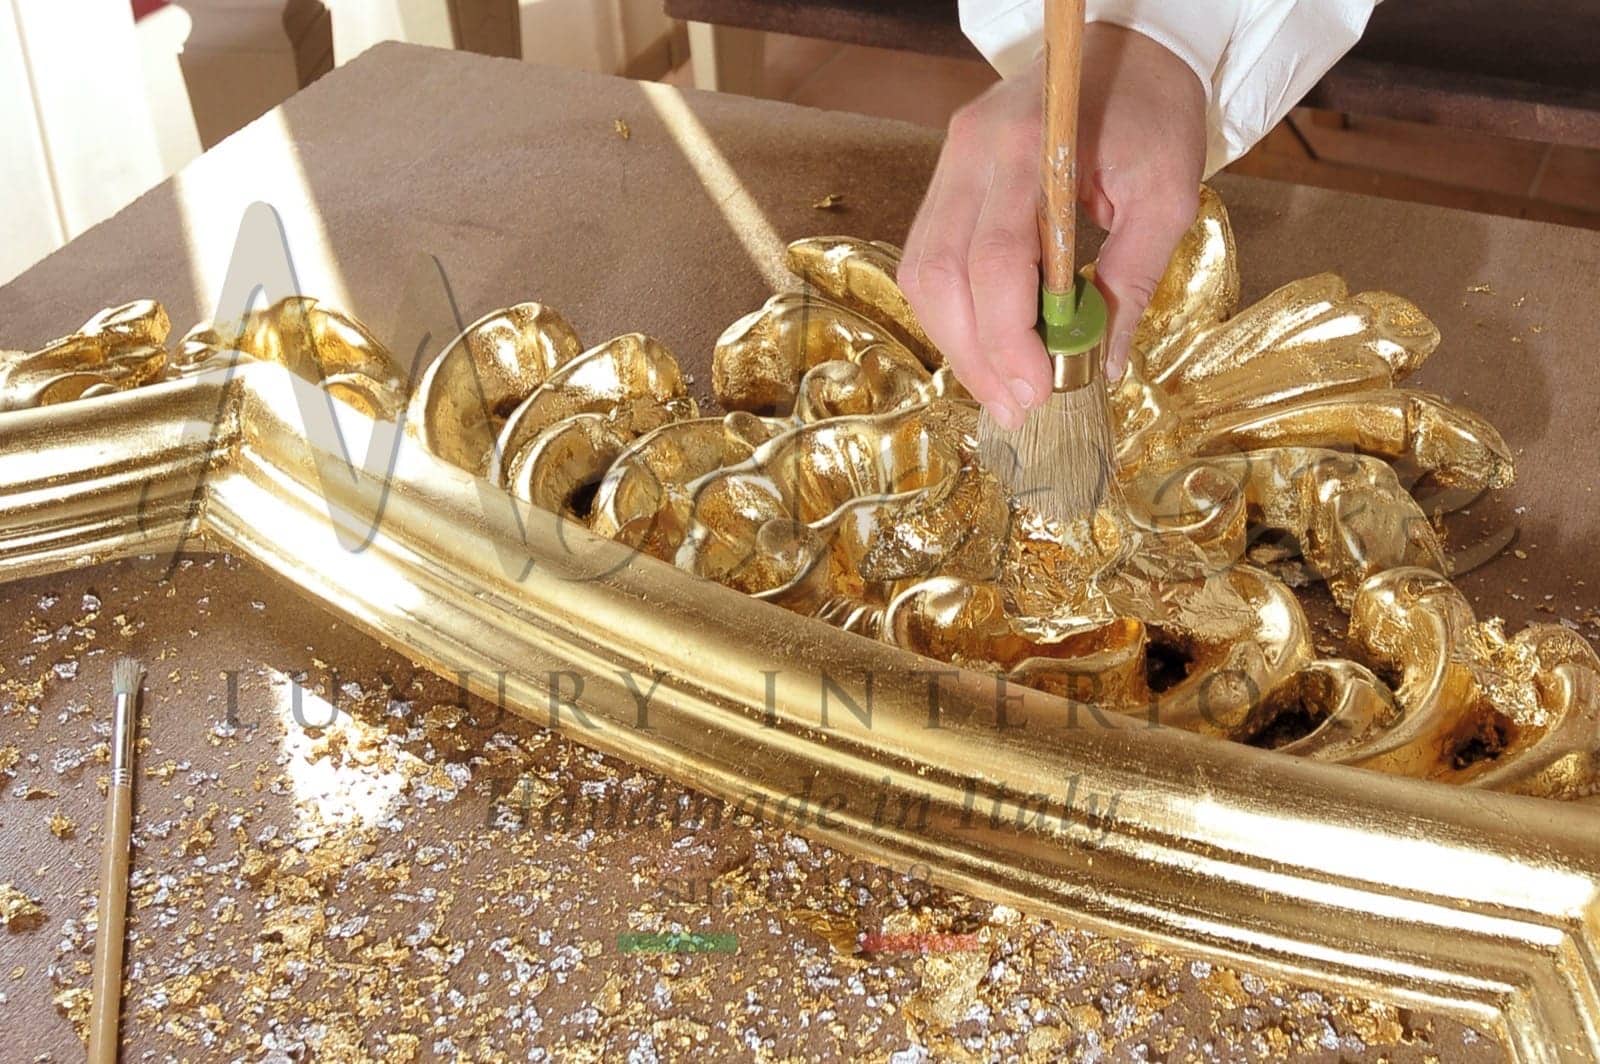 feuille d'argent d'or 24k meubles sculptés fait à la mainen Italie pièces italiennes de luxe design d'intérieur fabrication artisanale fabrication artisanale vénitienne rococo style baroque décoration de luxe